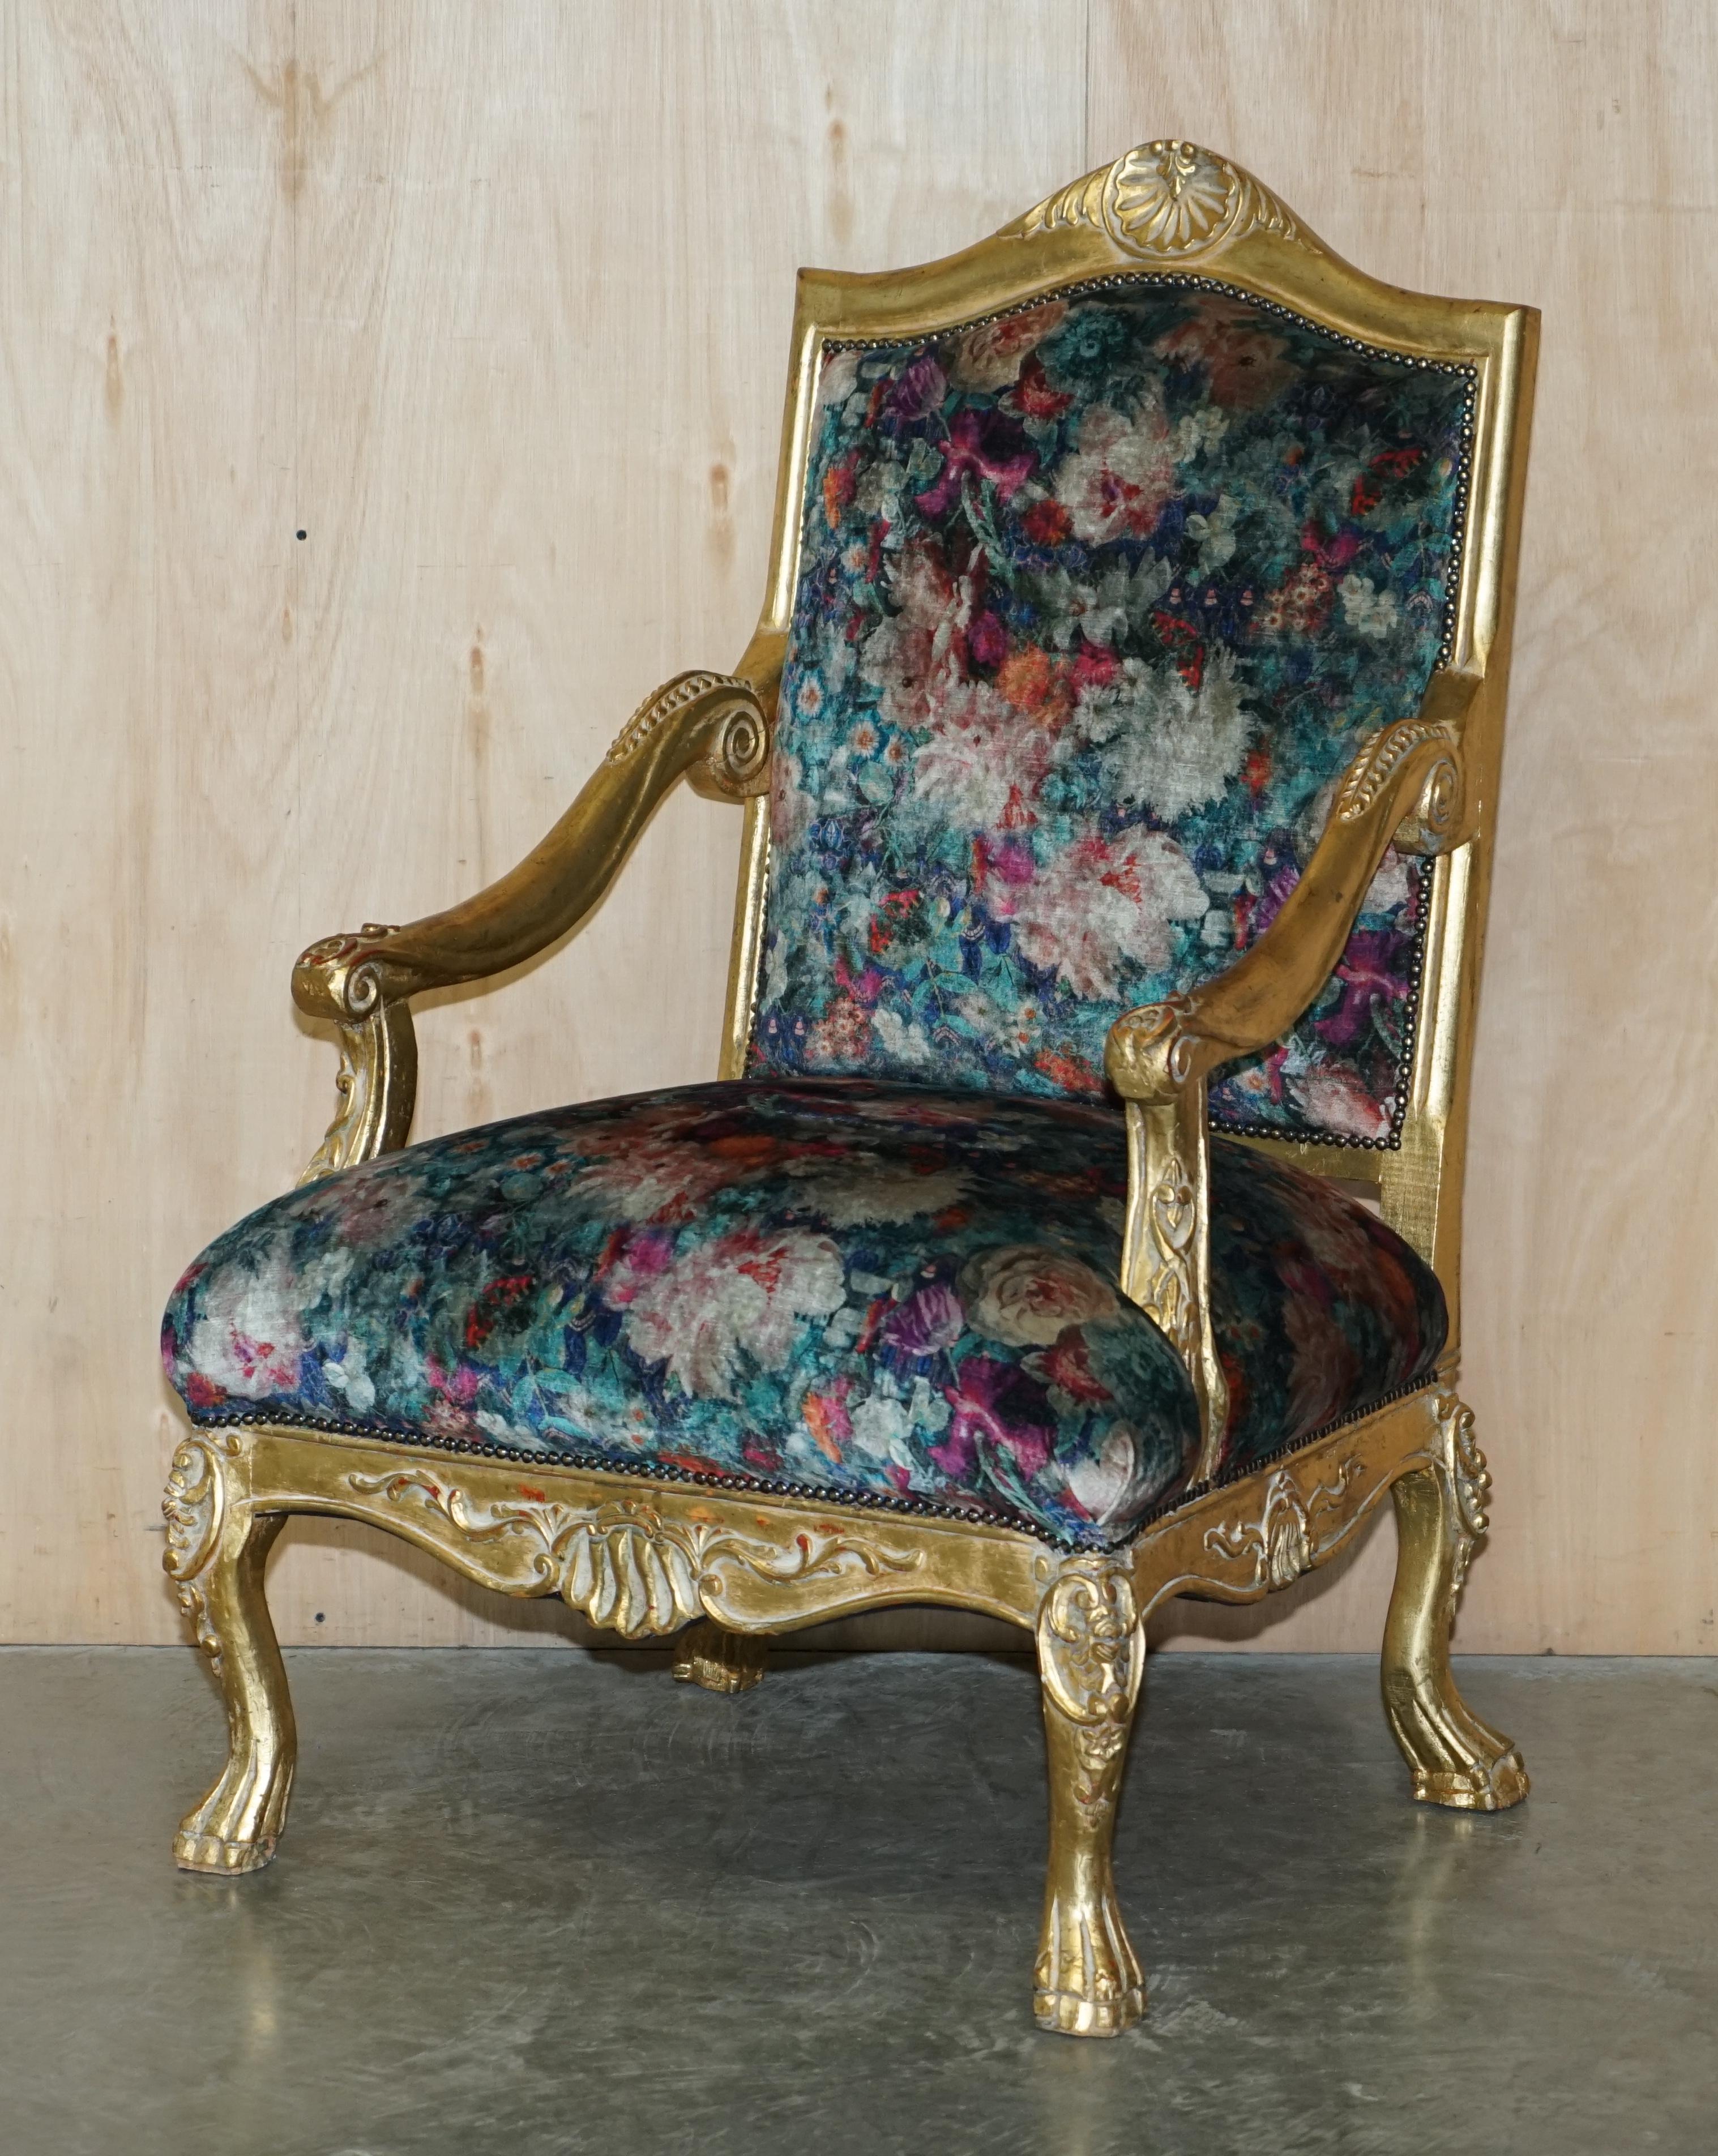 Nous avons le plaisir d'offrir à la vente cette paire de fauteuils Fauteuils anciens Louis XV en bois doré.

Veuillez noter que les frais de livraison indiqués sont donnés à titre indicatif, ils ne couvrent que la zone M25 pour le Royaume-Uni et